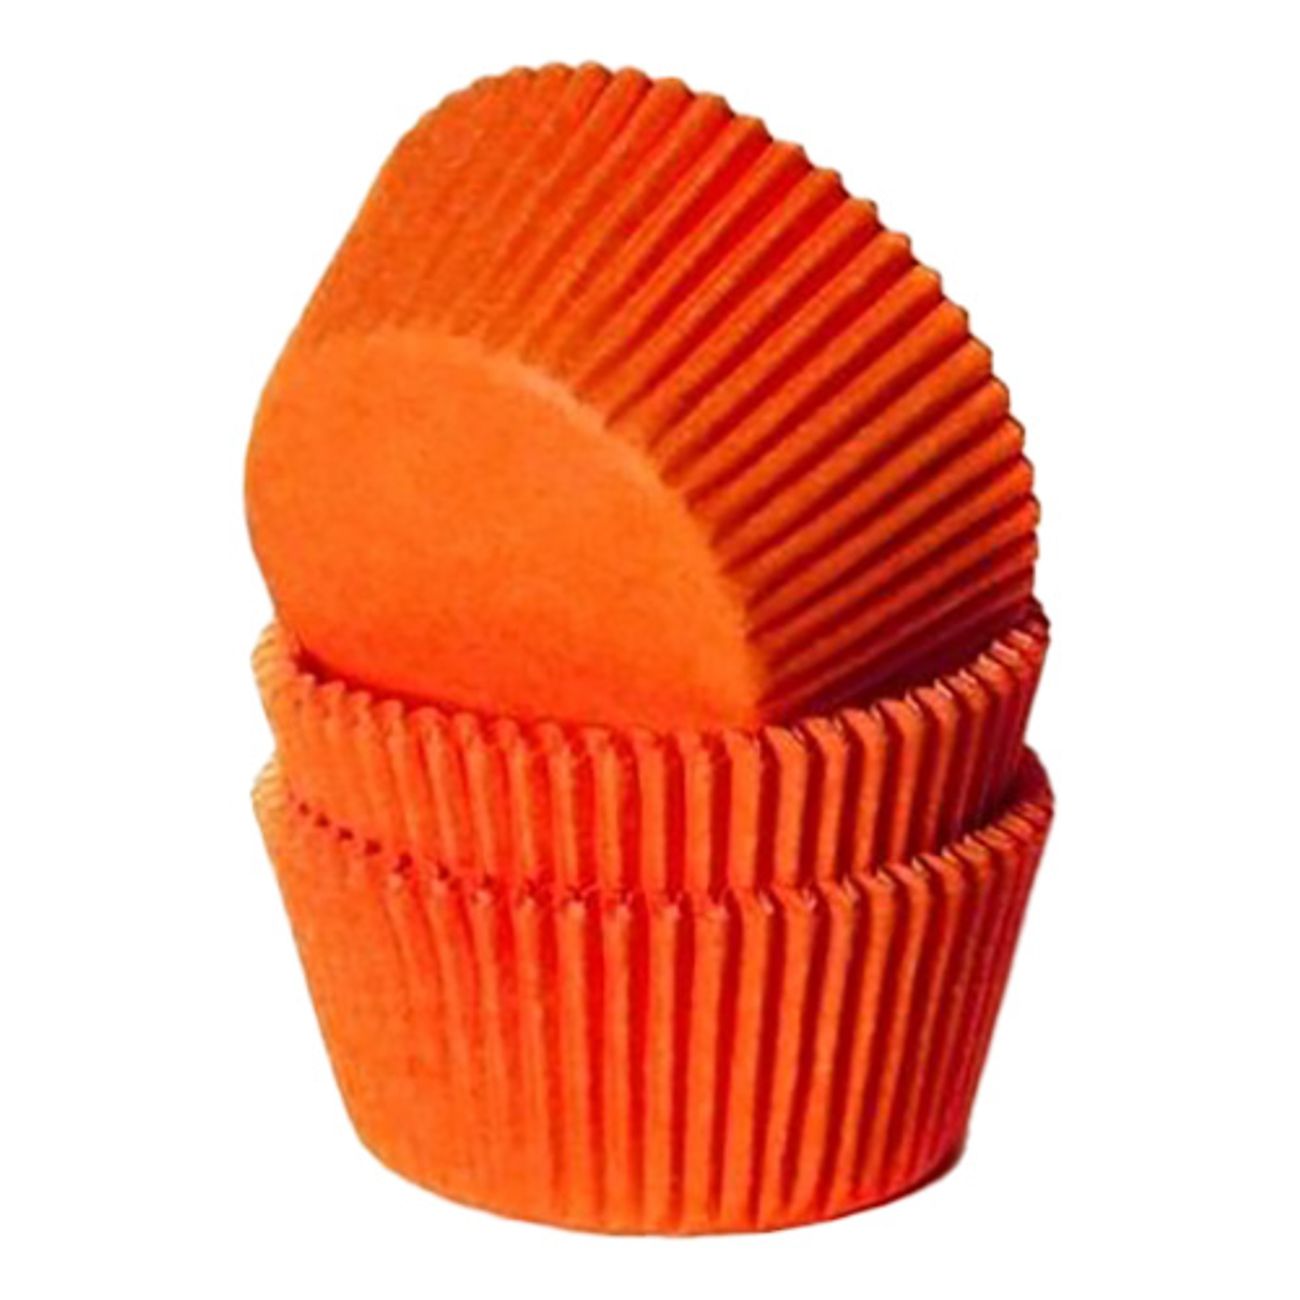 muffinsformar-orange2-3